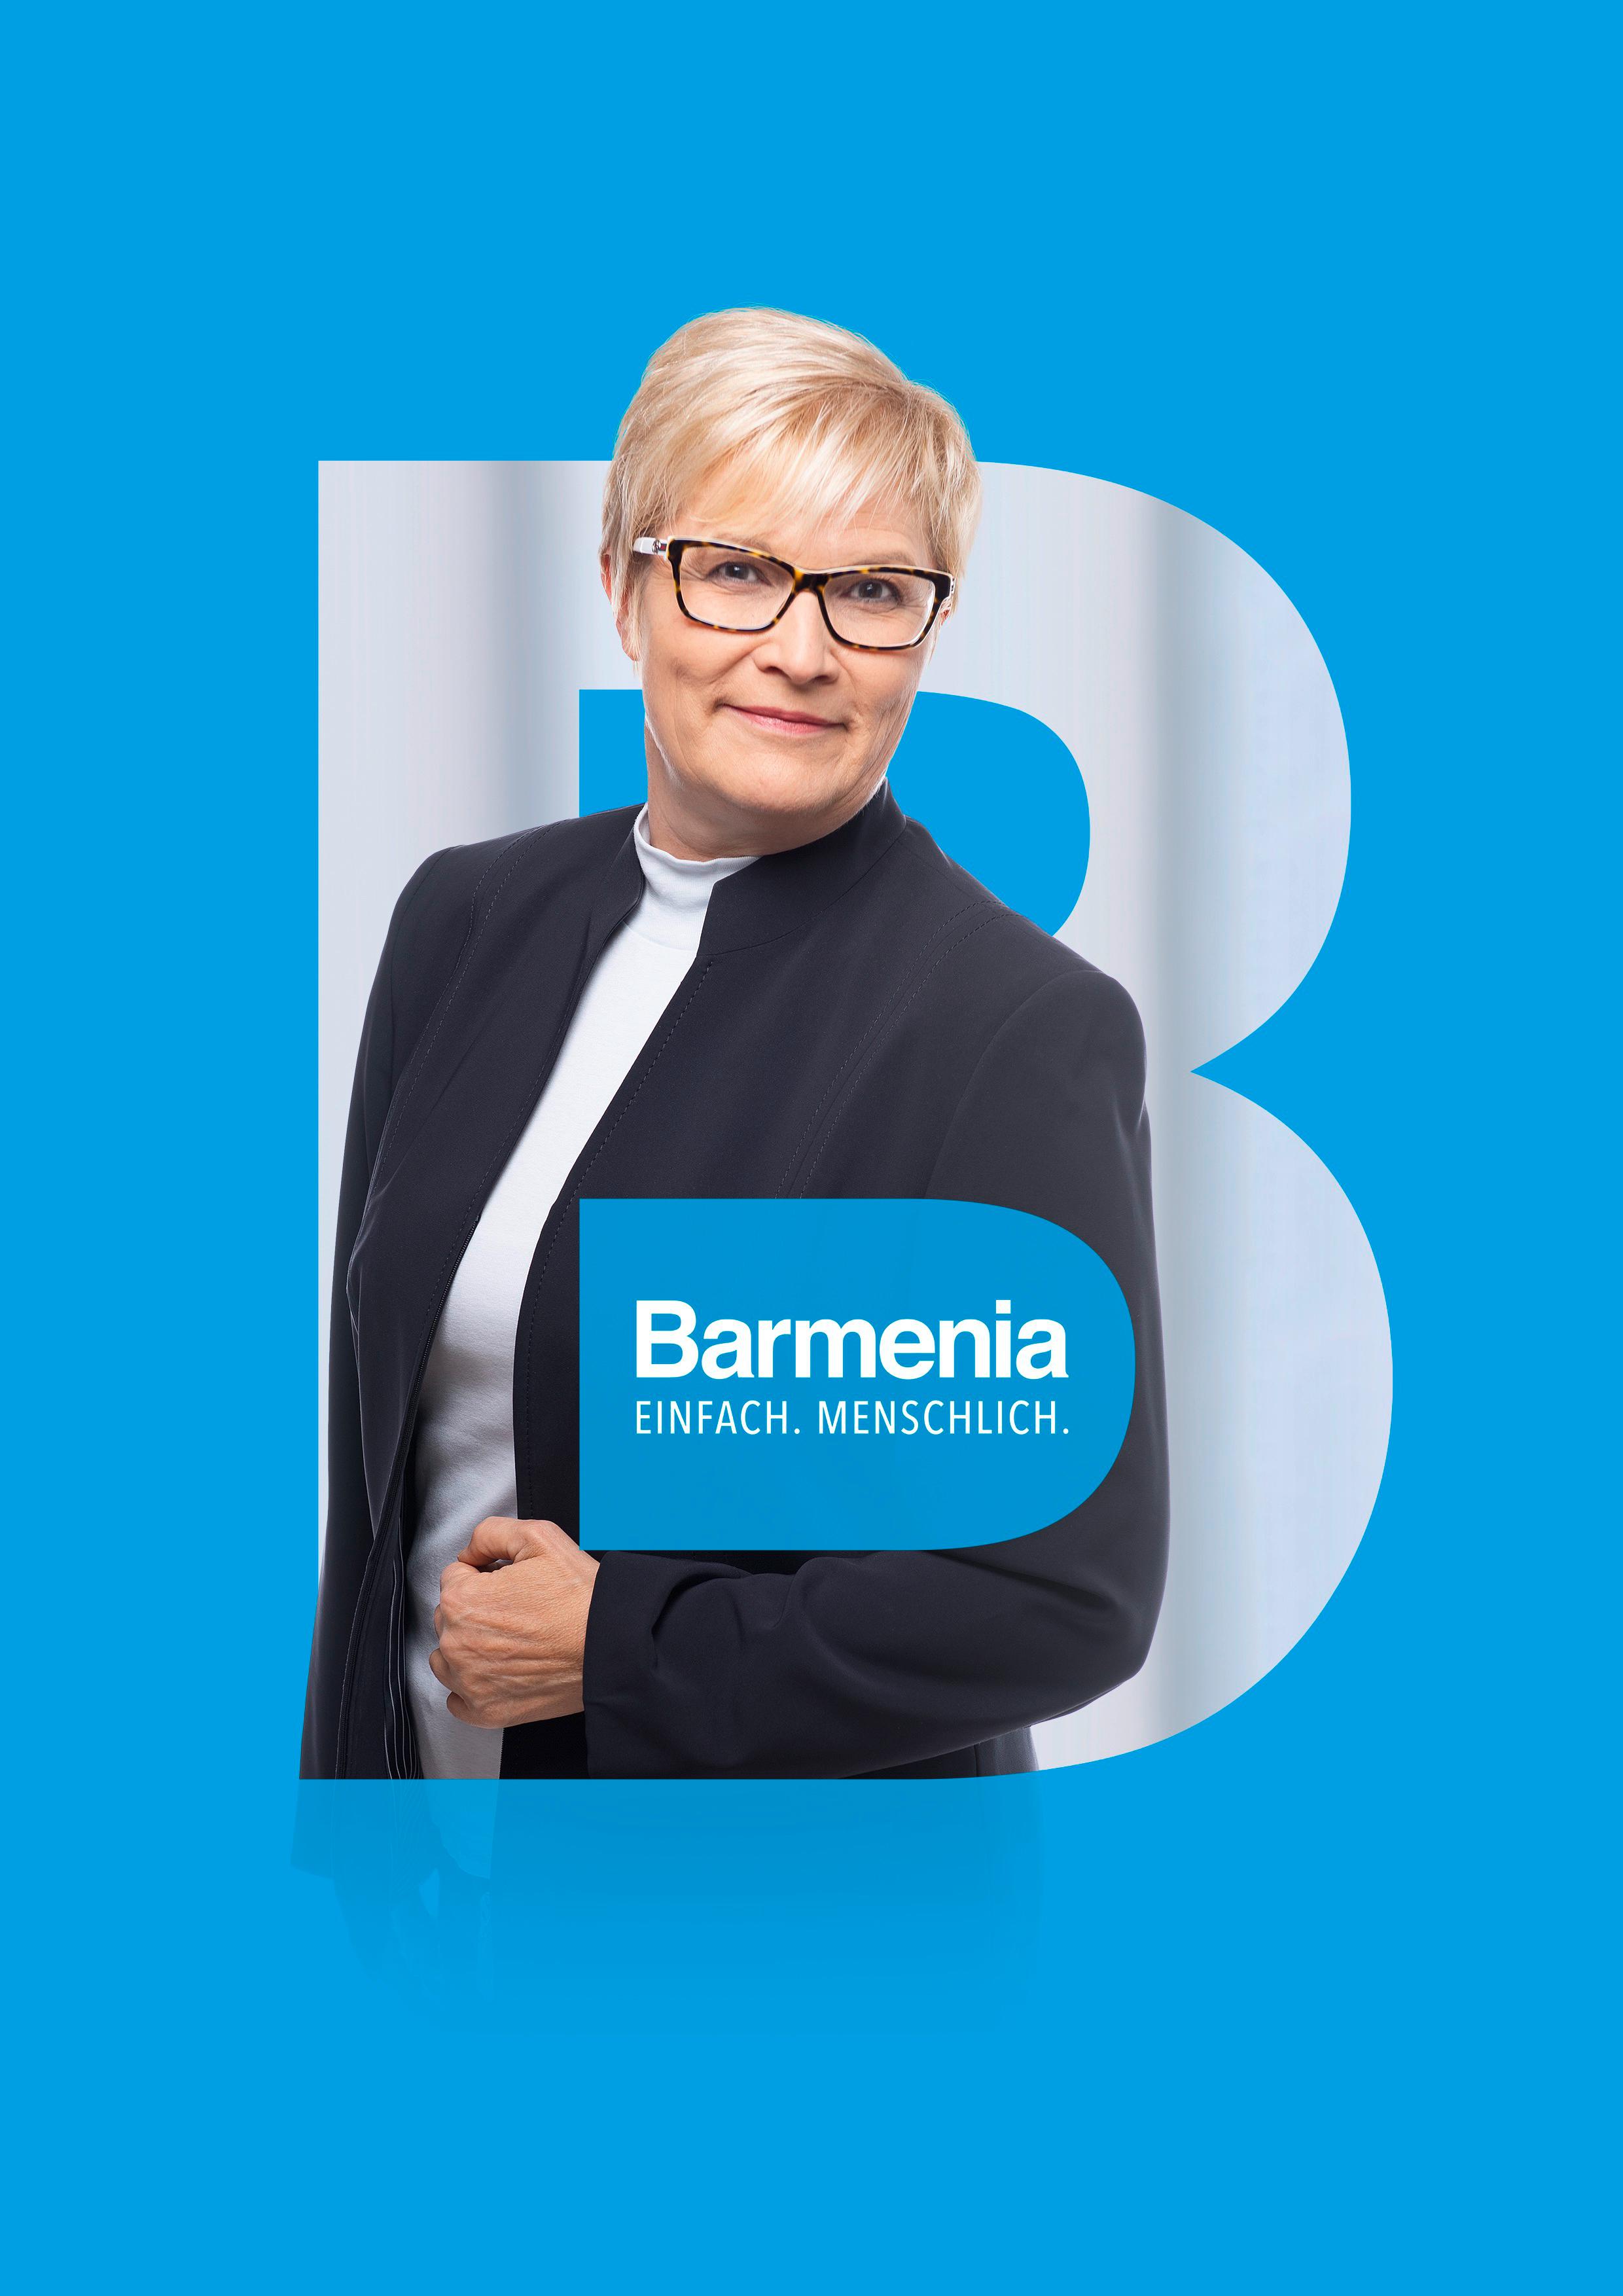 Manuela Zwoch
Ihre Ansprechpartnerin für die Barmenia Versicherung in Leipzig und im Landkreis Leipzig